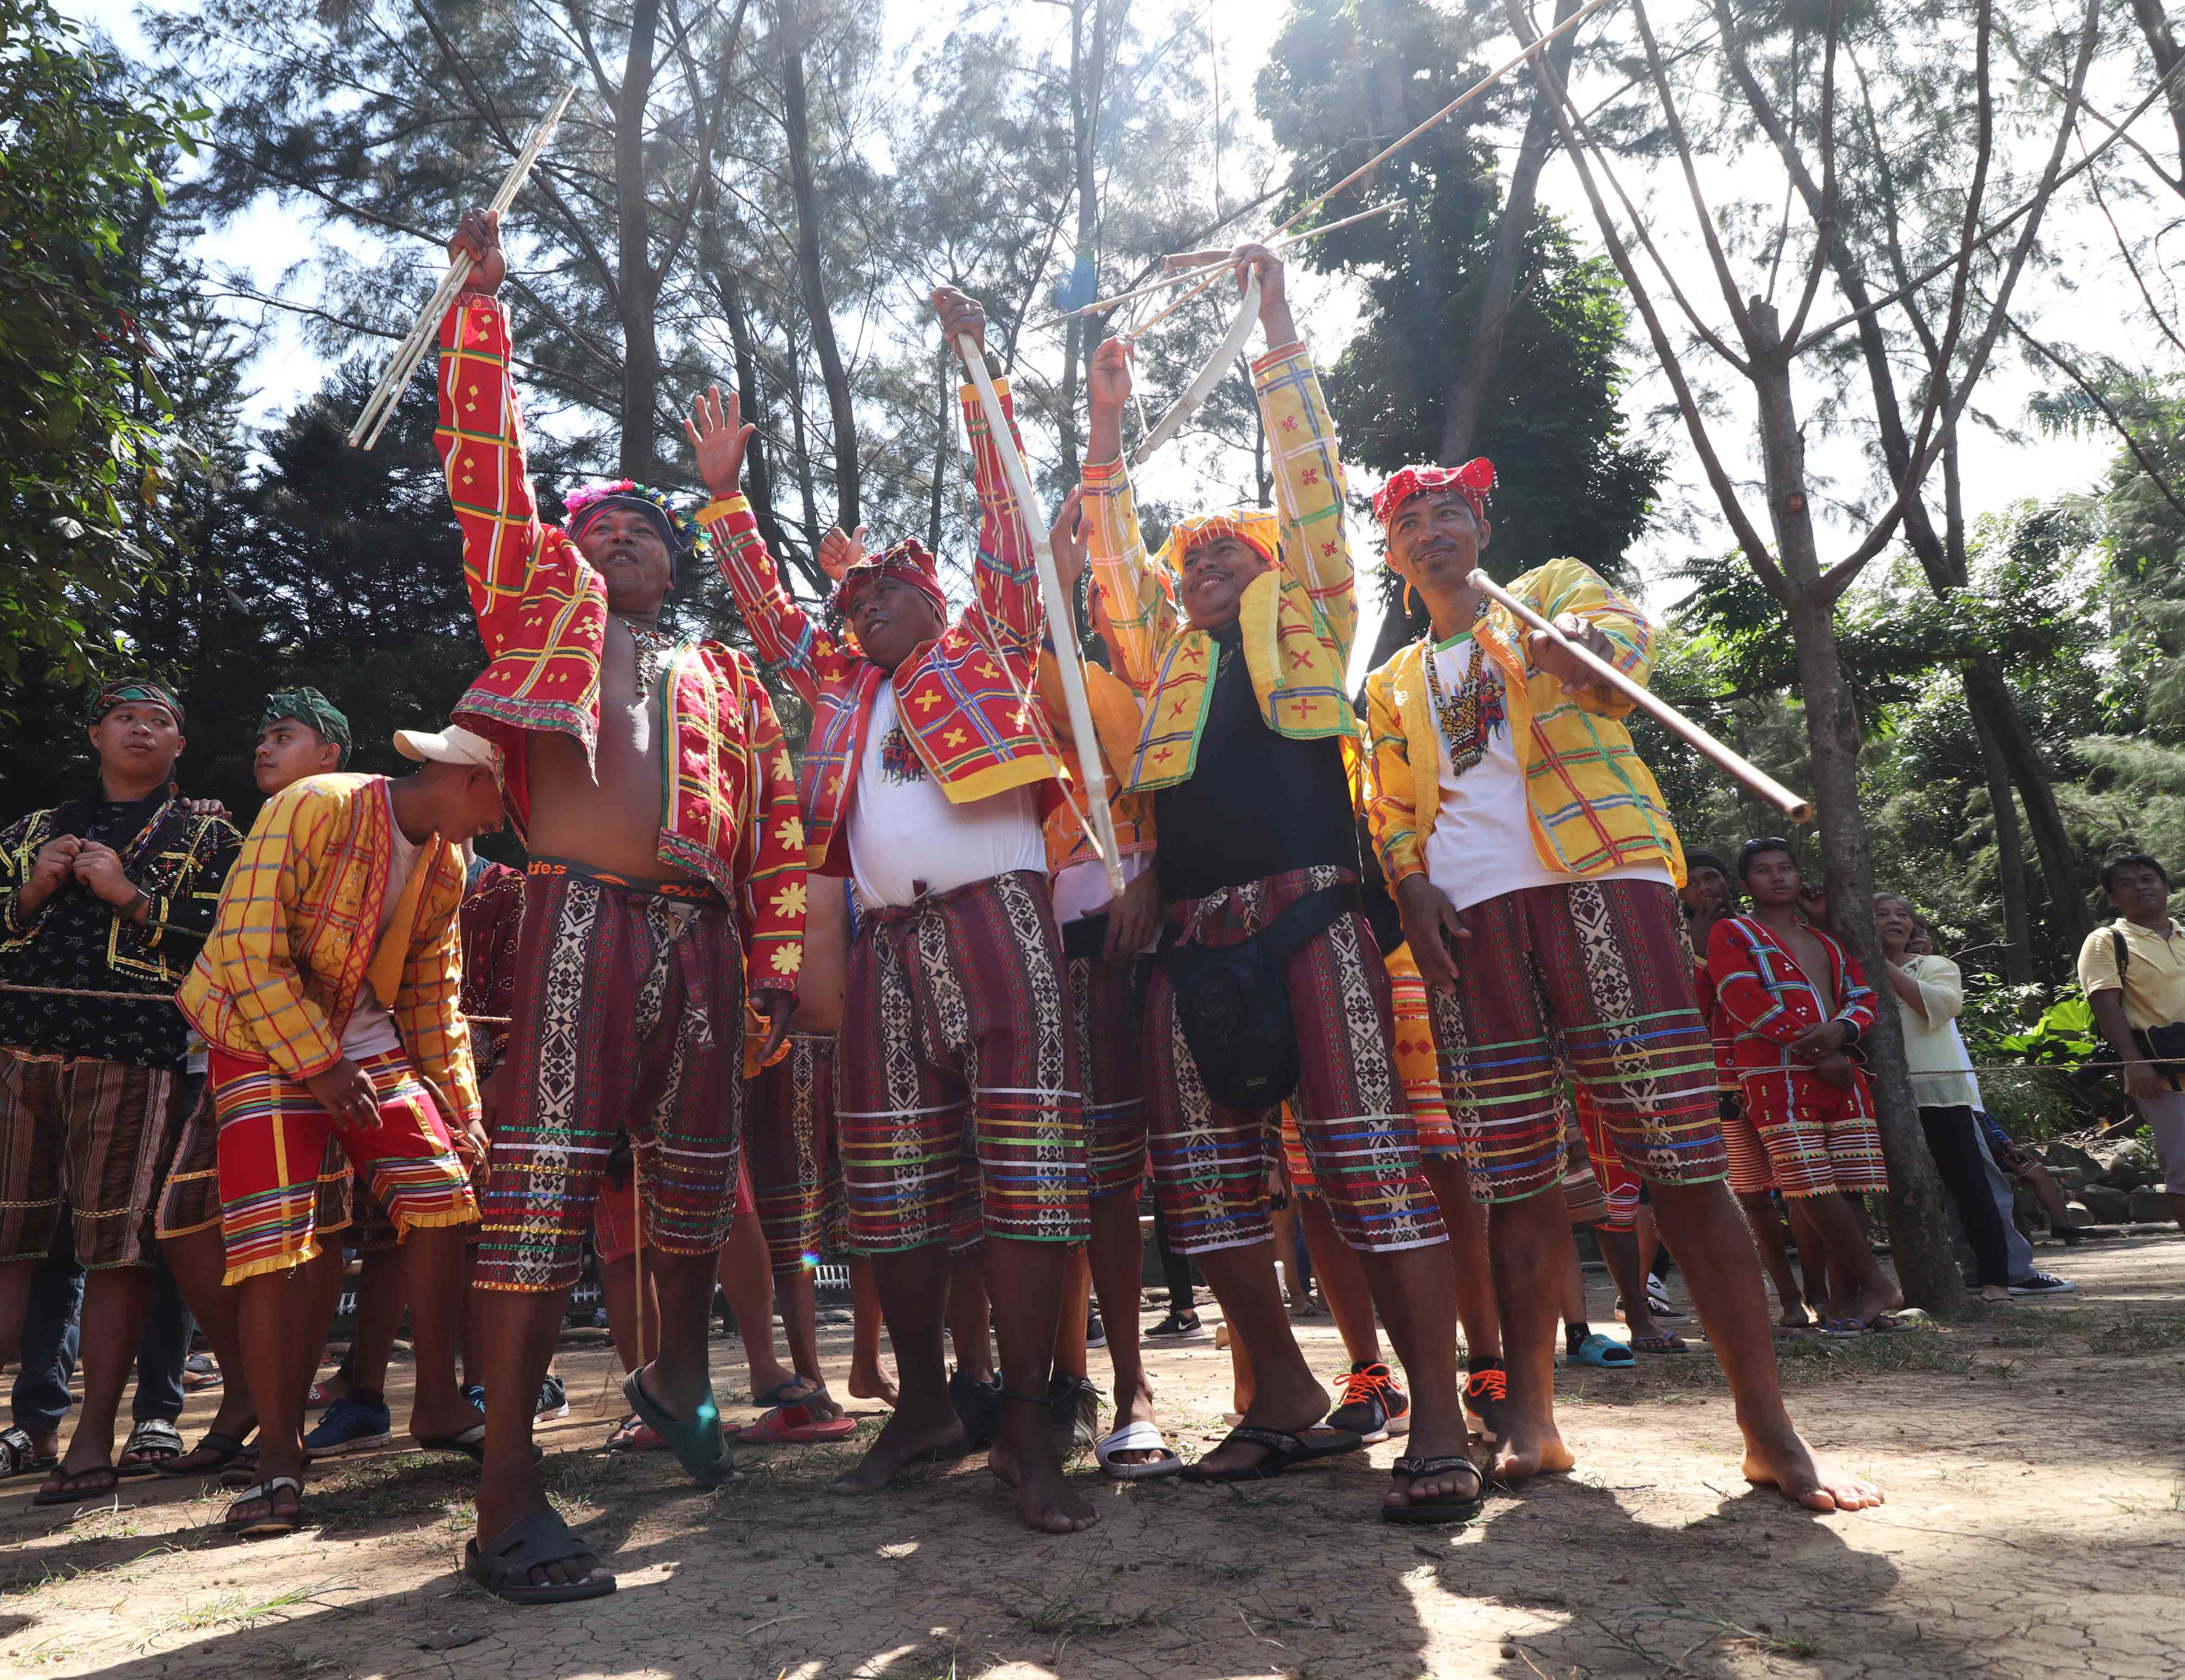 PIA - Kadayawan sa Davao: Celebrating diversity